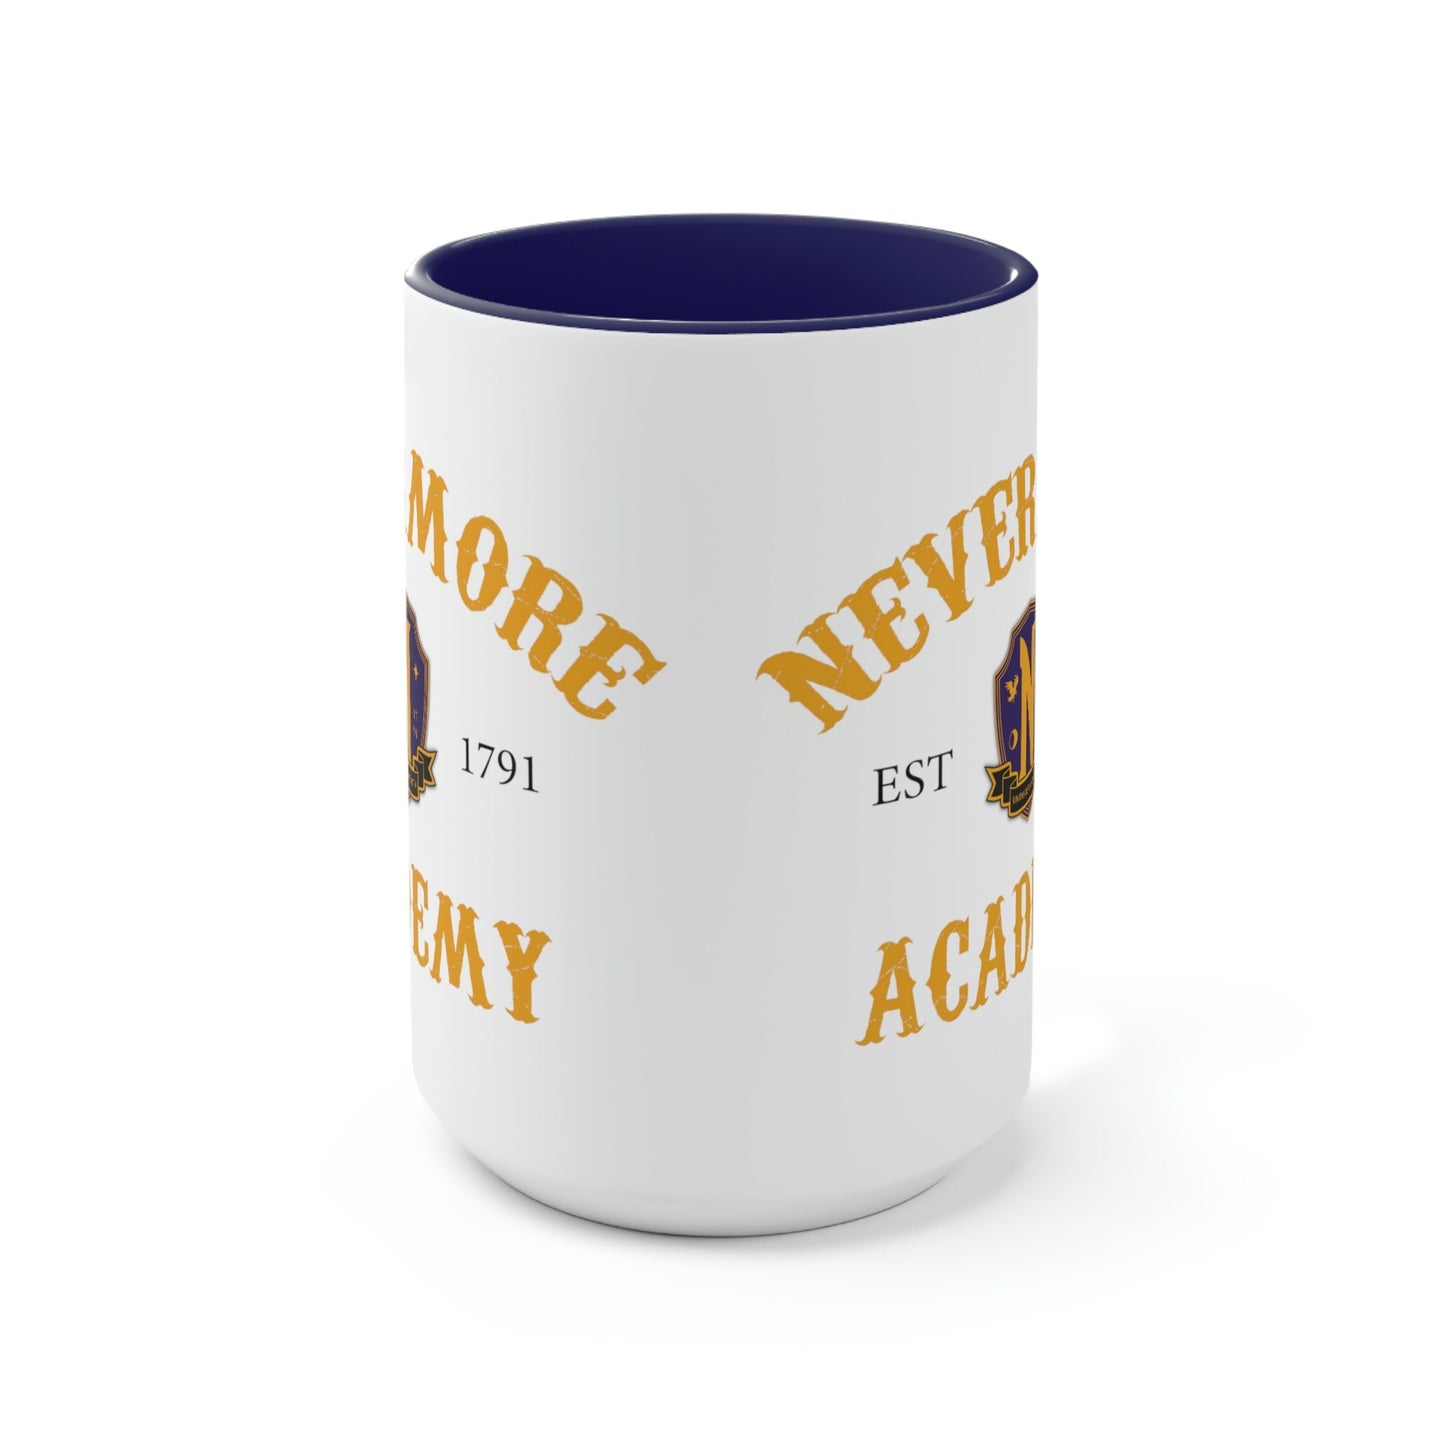 Nevermore Academy Mug, Wednesday Addams Mug, Wednesday mug, Wednesday Addams, Wednesday merch, Horror mug